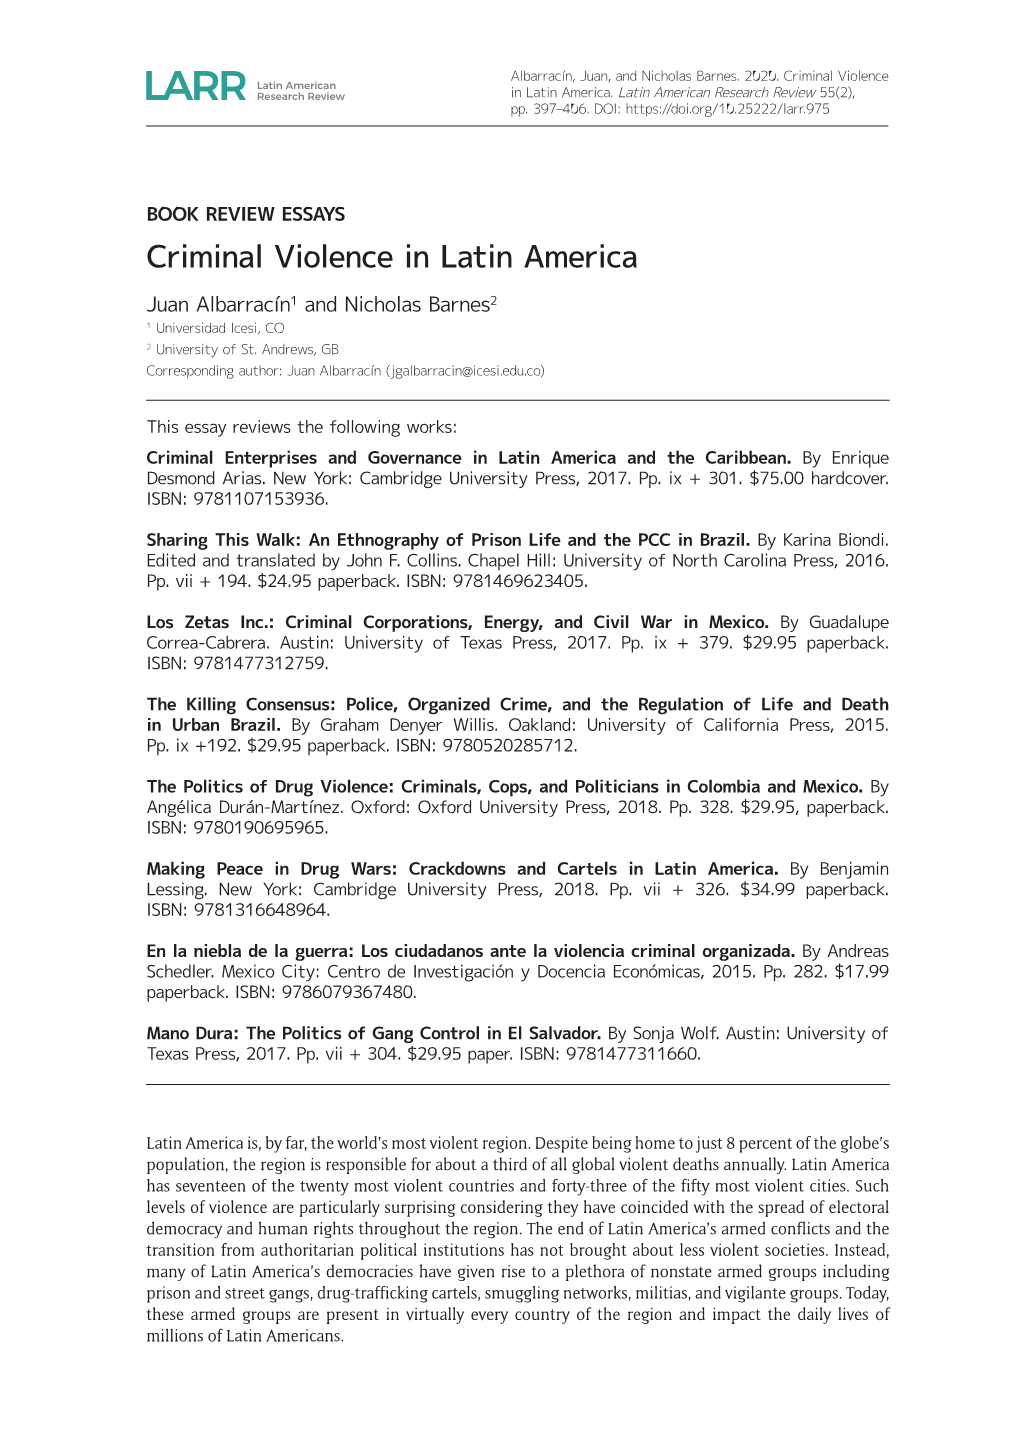 Criminal Violence in Latin America